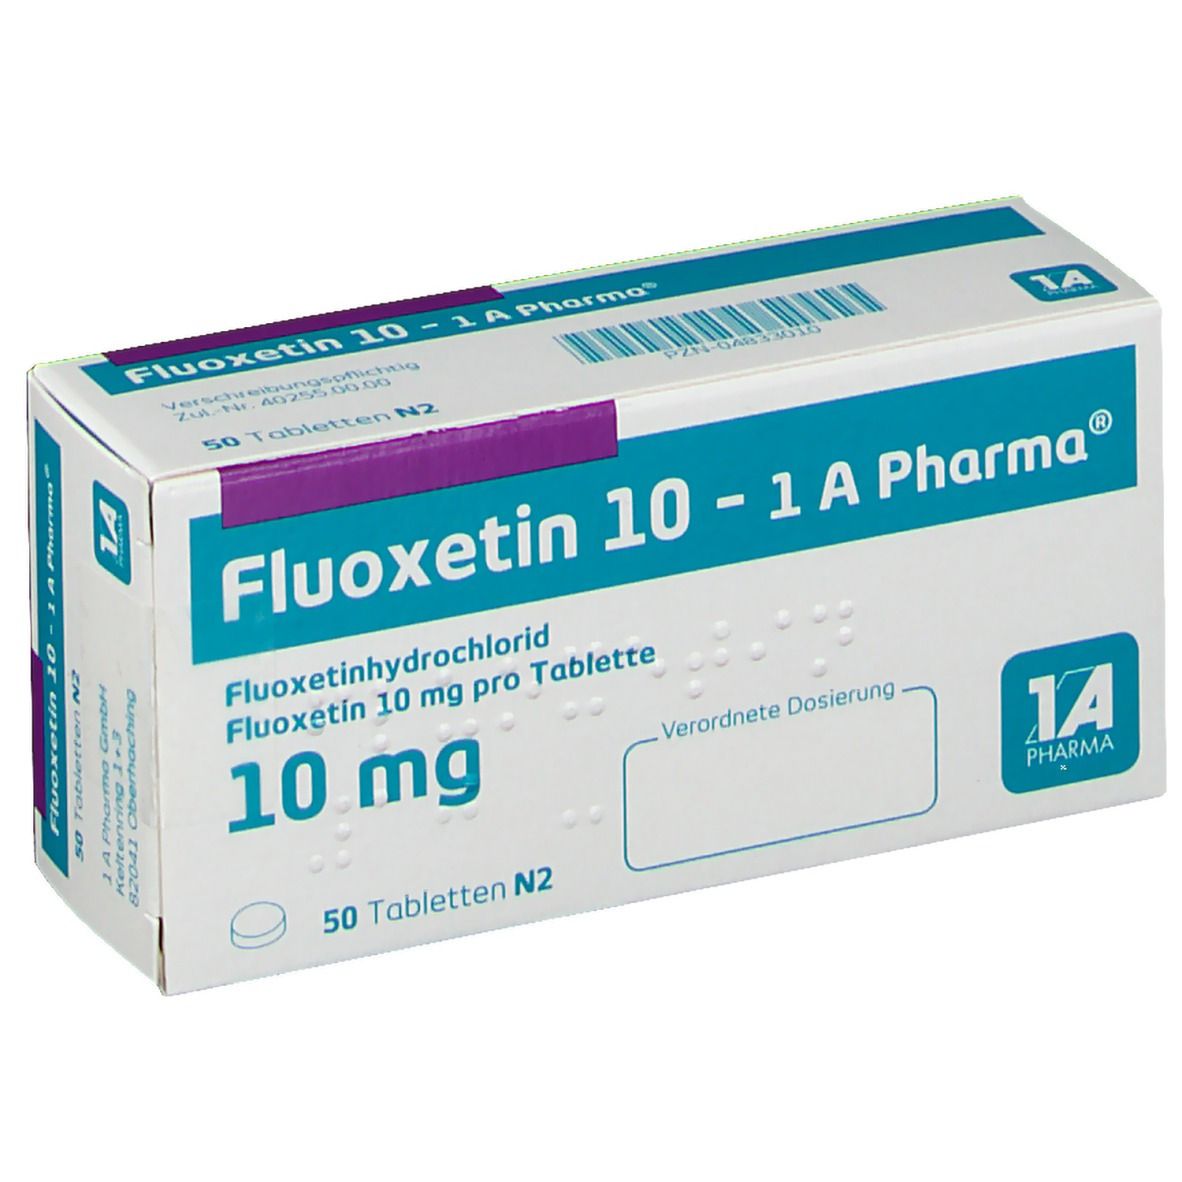 Fluoxetin 10 1A Pharma®